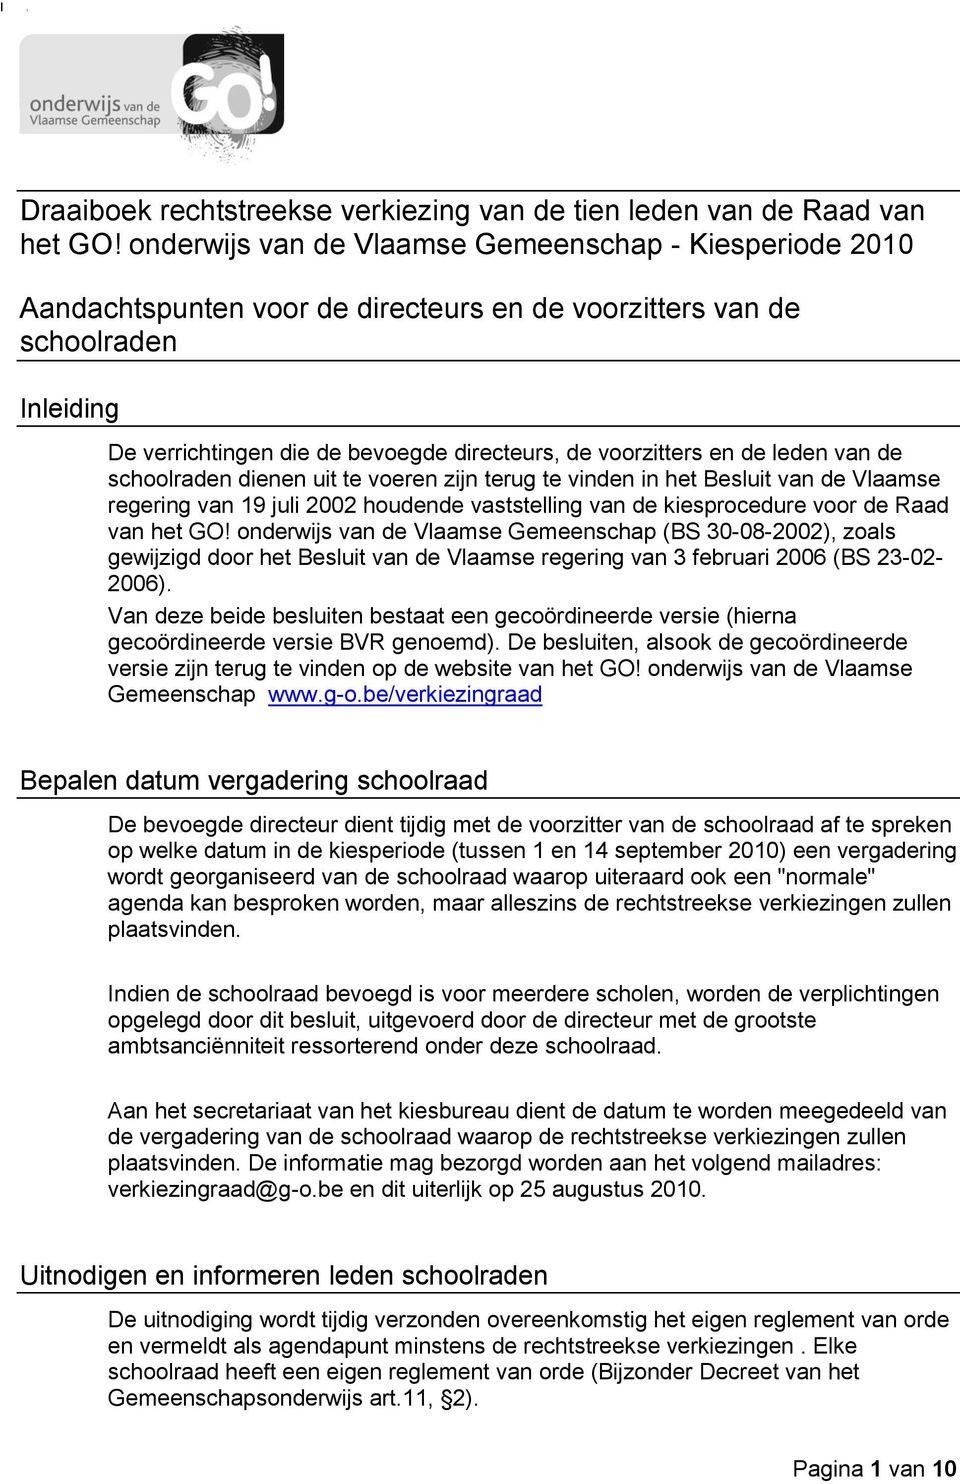 en de leden van de schoolraden dienen uit te voeren zijn terug te vinden in het Besluit van de Vlaamse regering van 19 juli 2002 houdende vaststelling van de kiesprocedure voor de Raad van het GO!